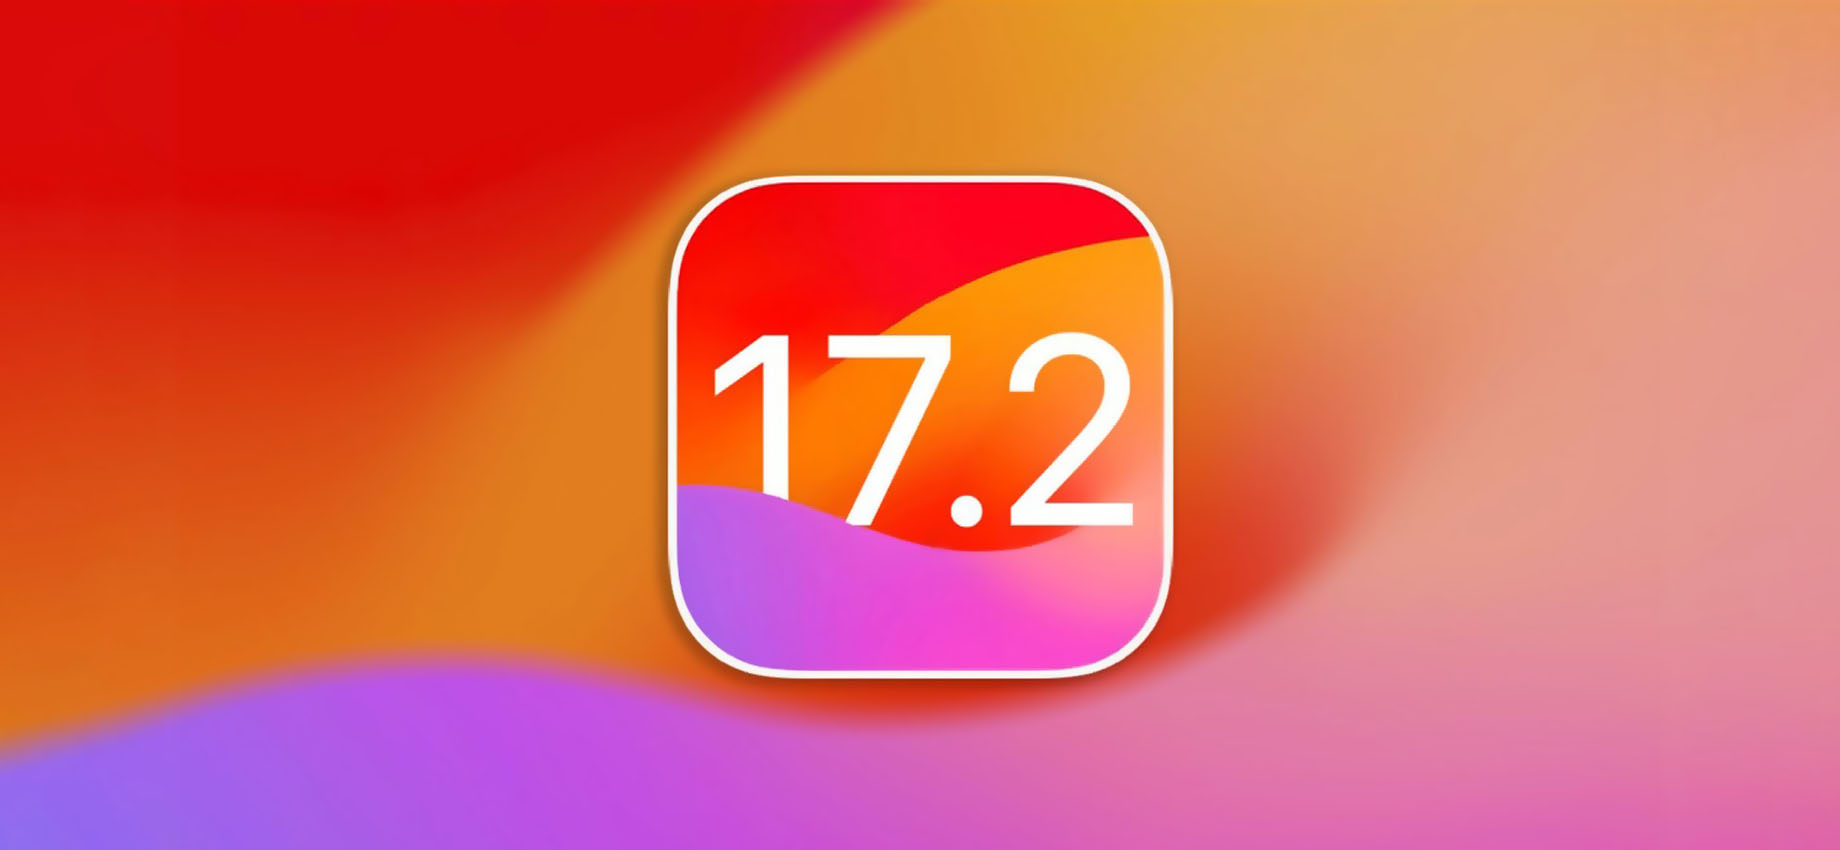 Вышла iOS 17.2: новое приложение «Дневник», улучшенная «Погода» и пространственное видео